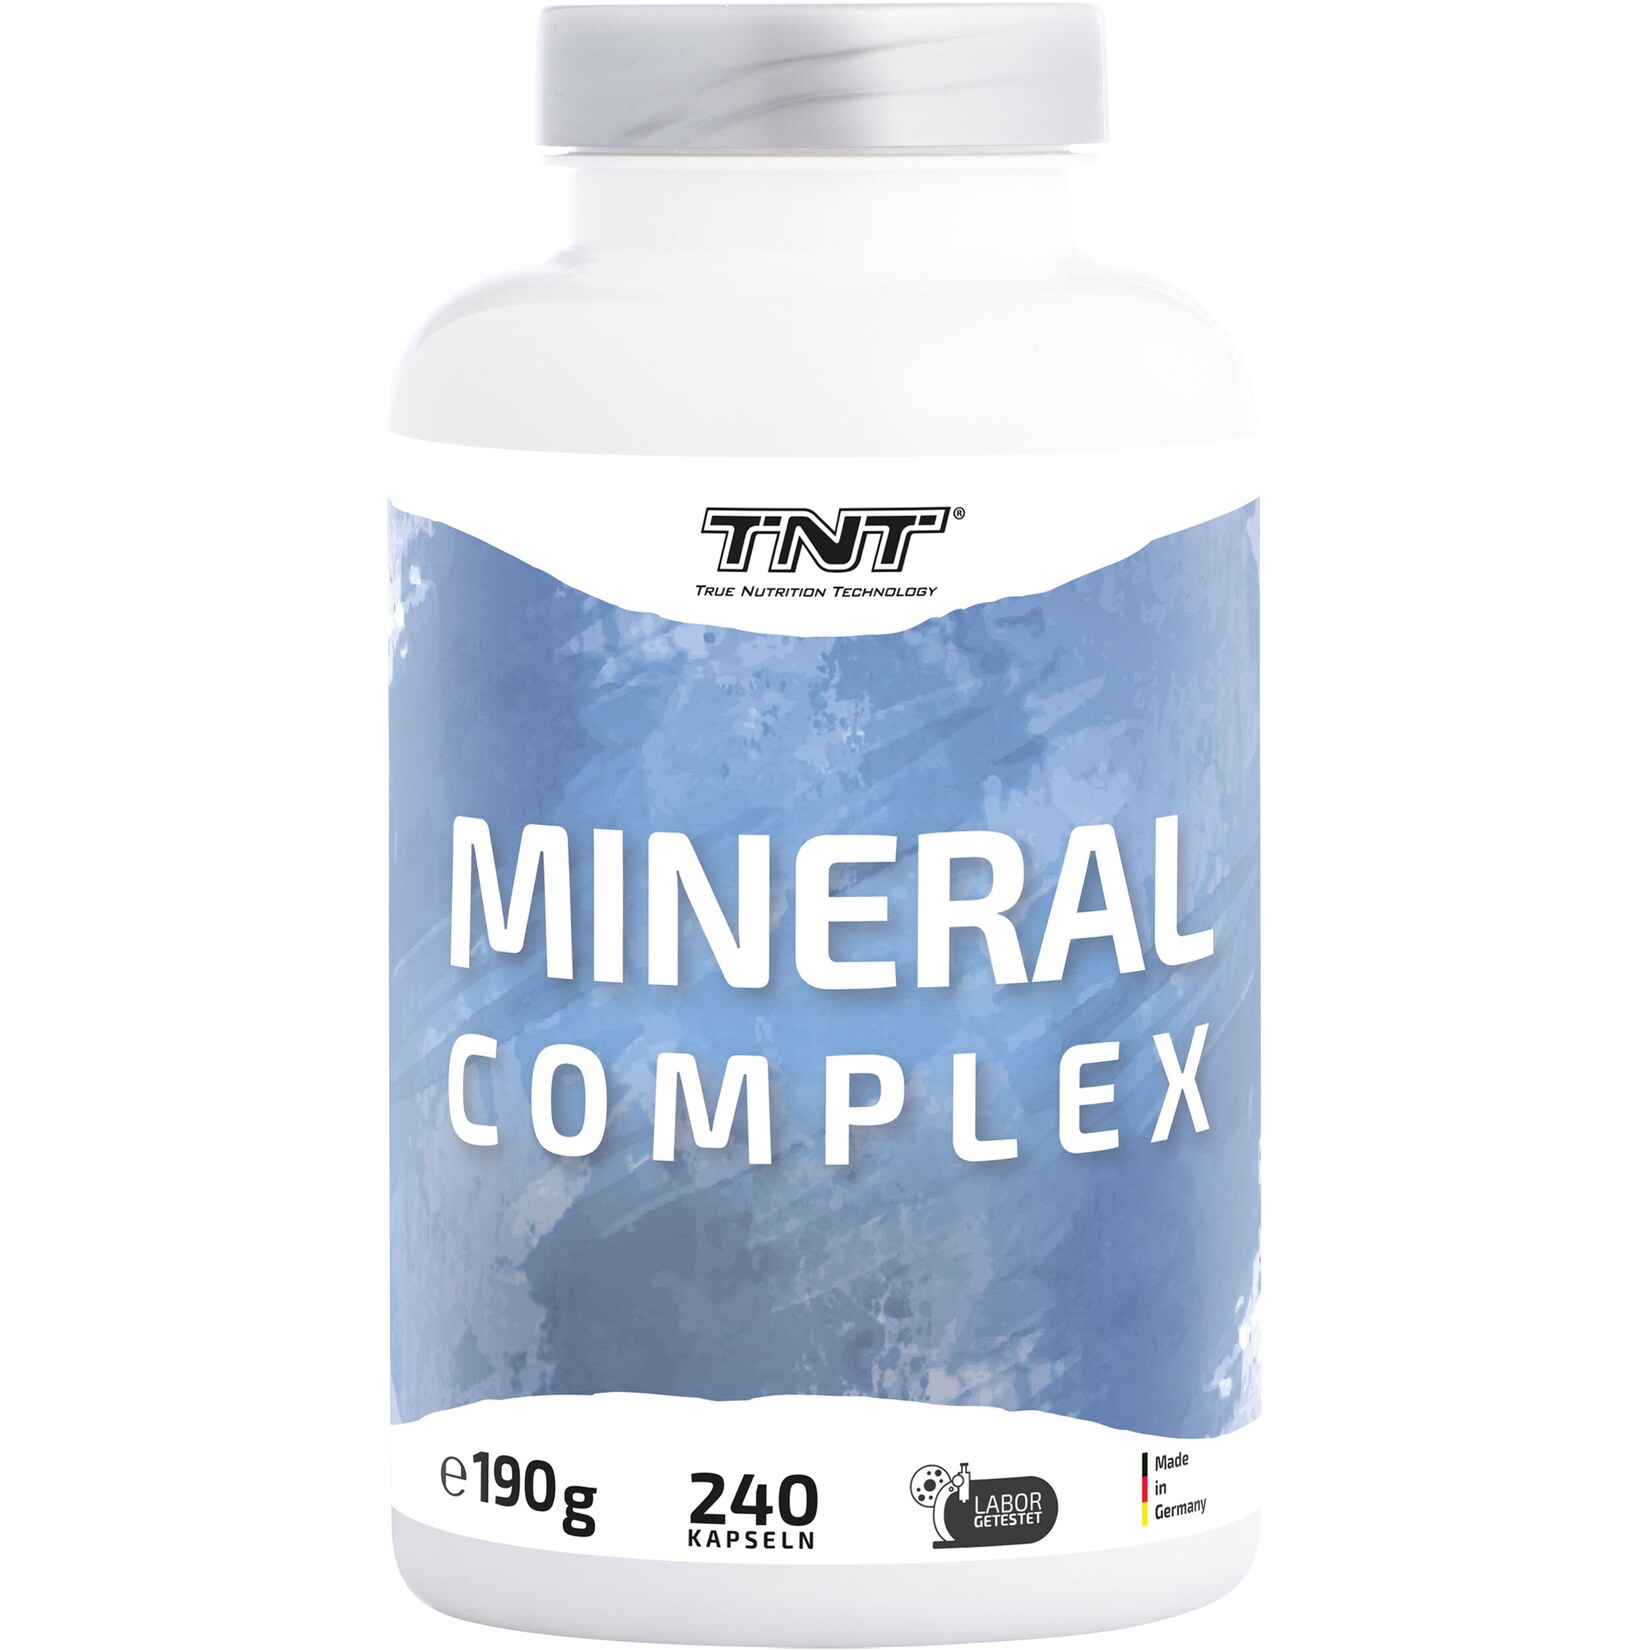 TNT Mineral Complex - 10 wichtige Mineralien in einem Produkt